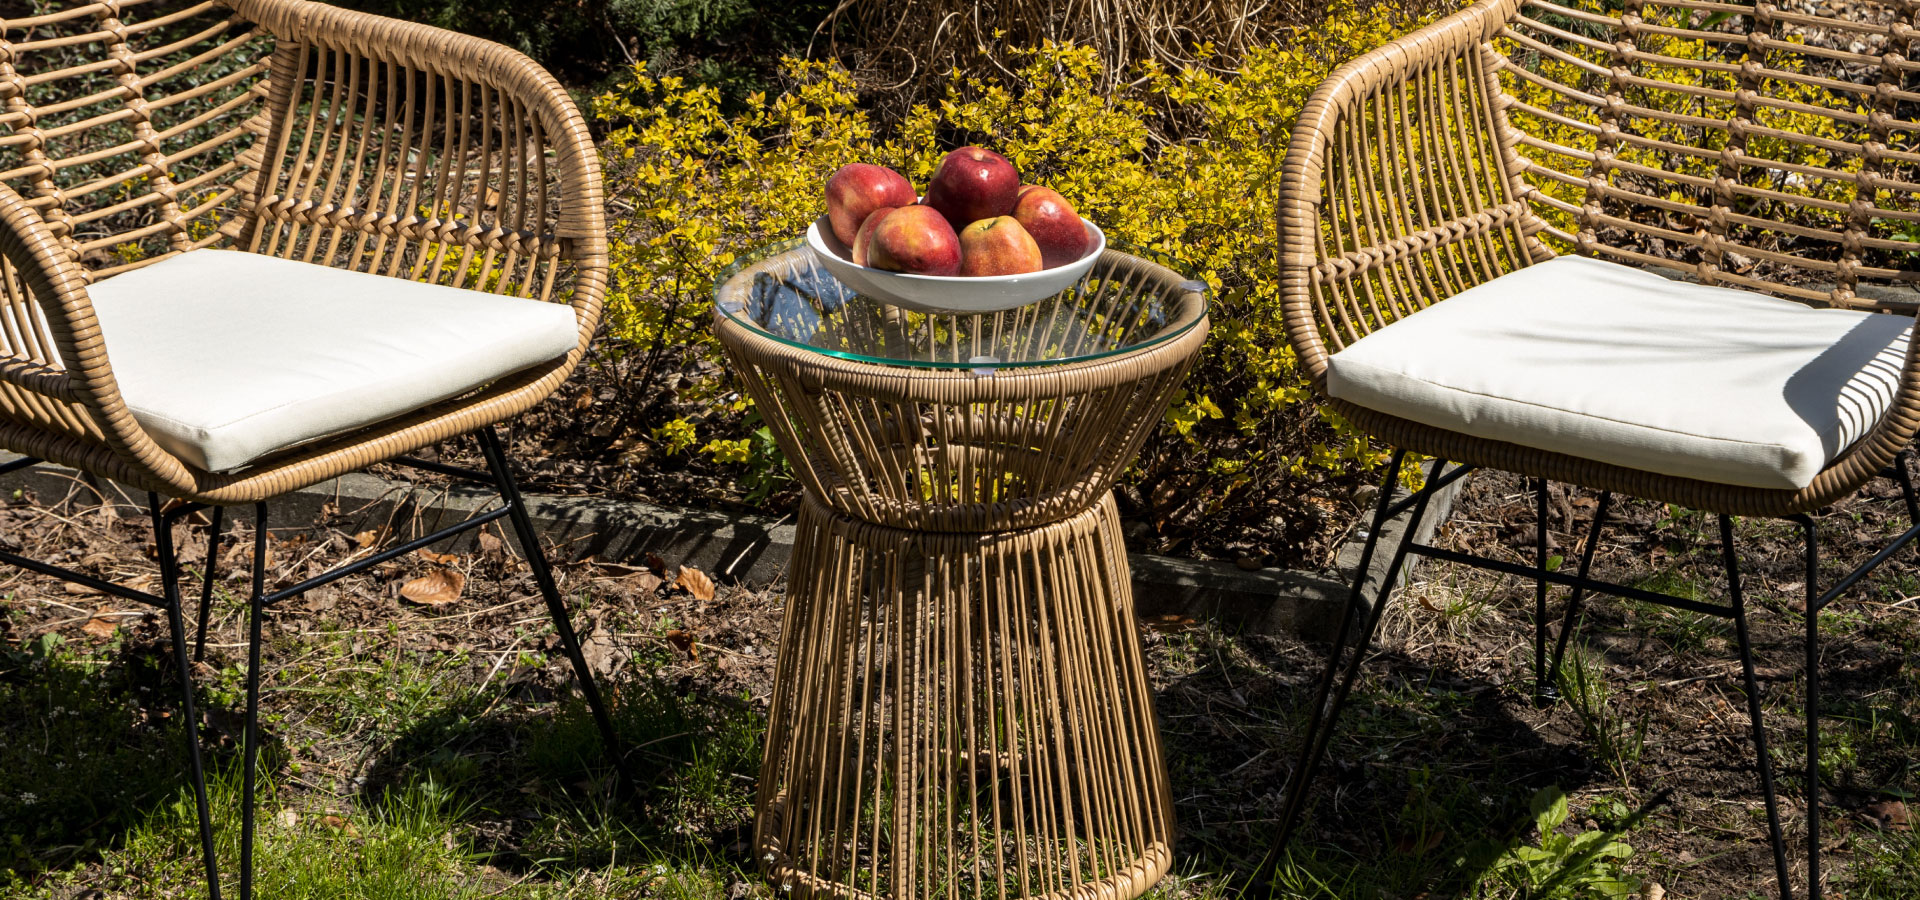 Zestaw balkonowy w stylu boho z dwoma krzesłami i stolikiem. Na stoliku stoi miska z jabłkami.